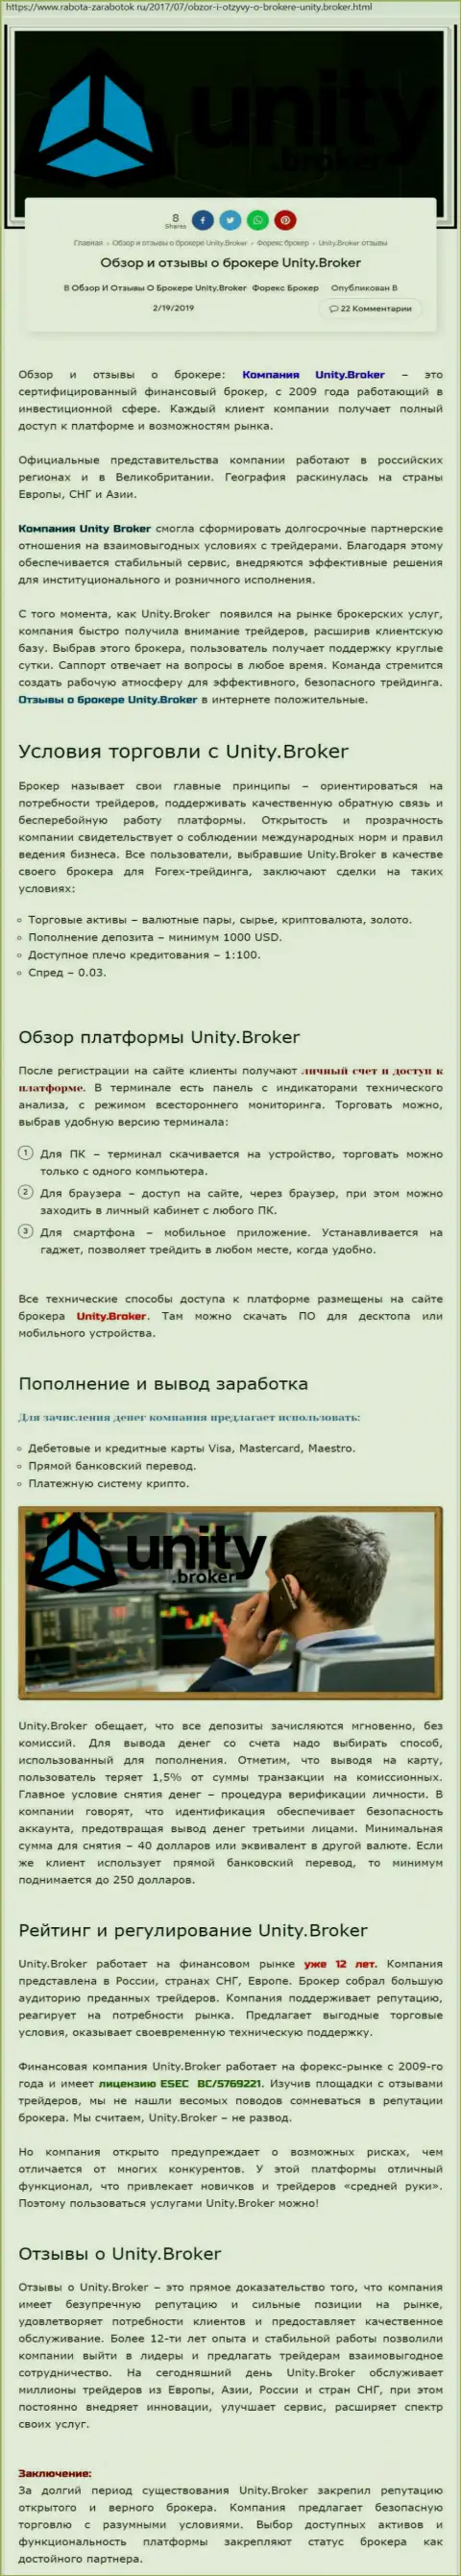 Обзорная информация Forex компании Unity Broker на сайте rabota zarabotok ru